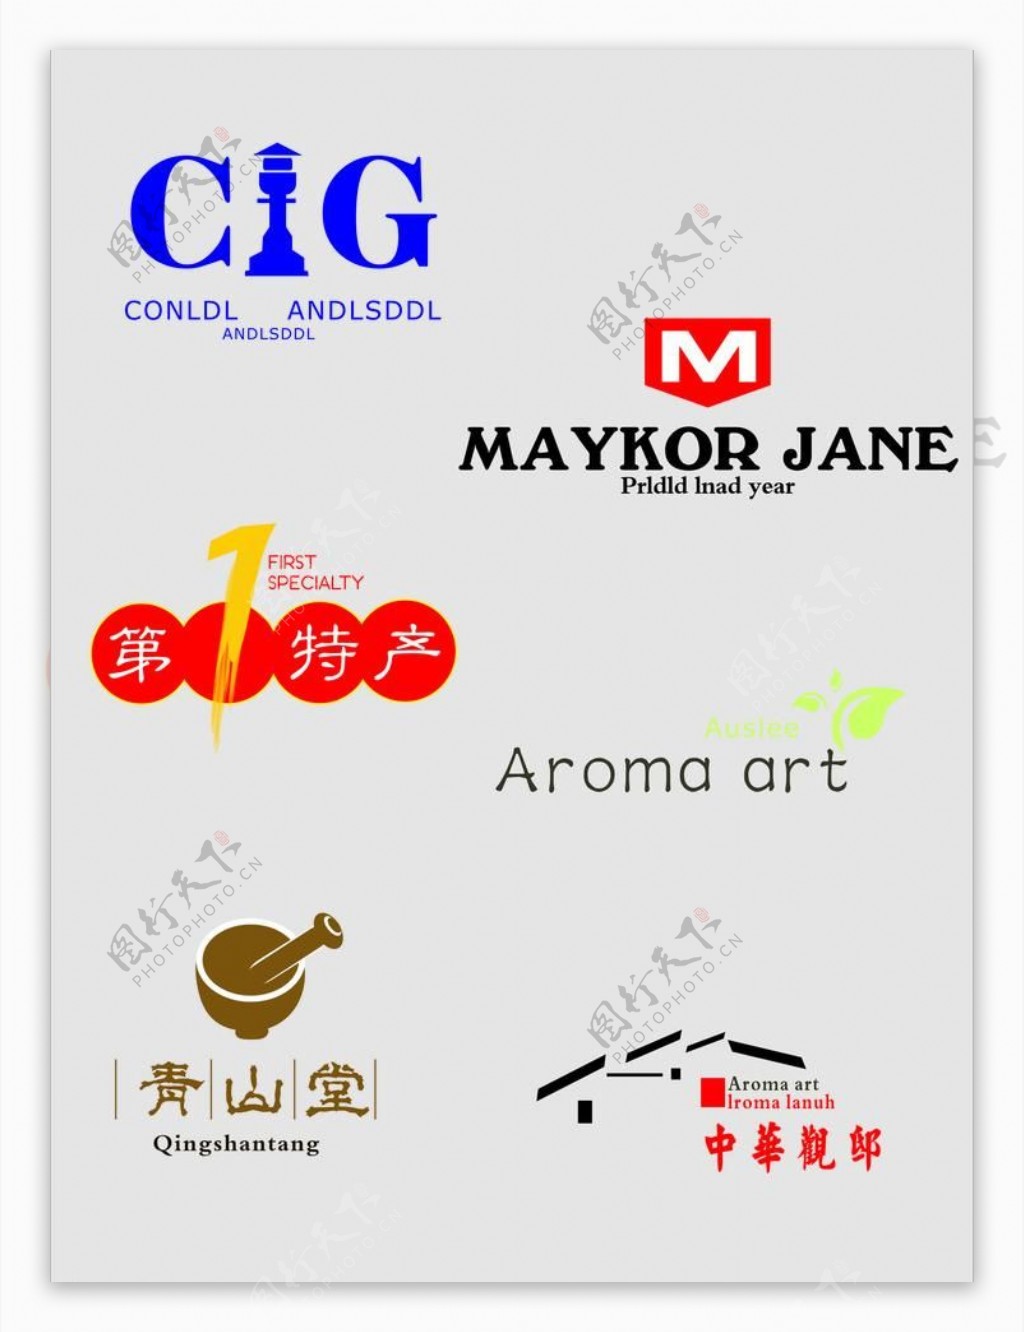 企业logo标识标识图片